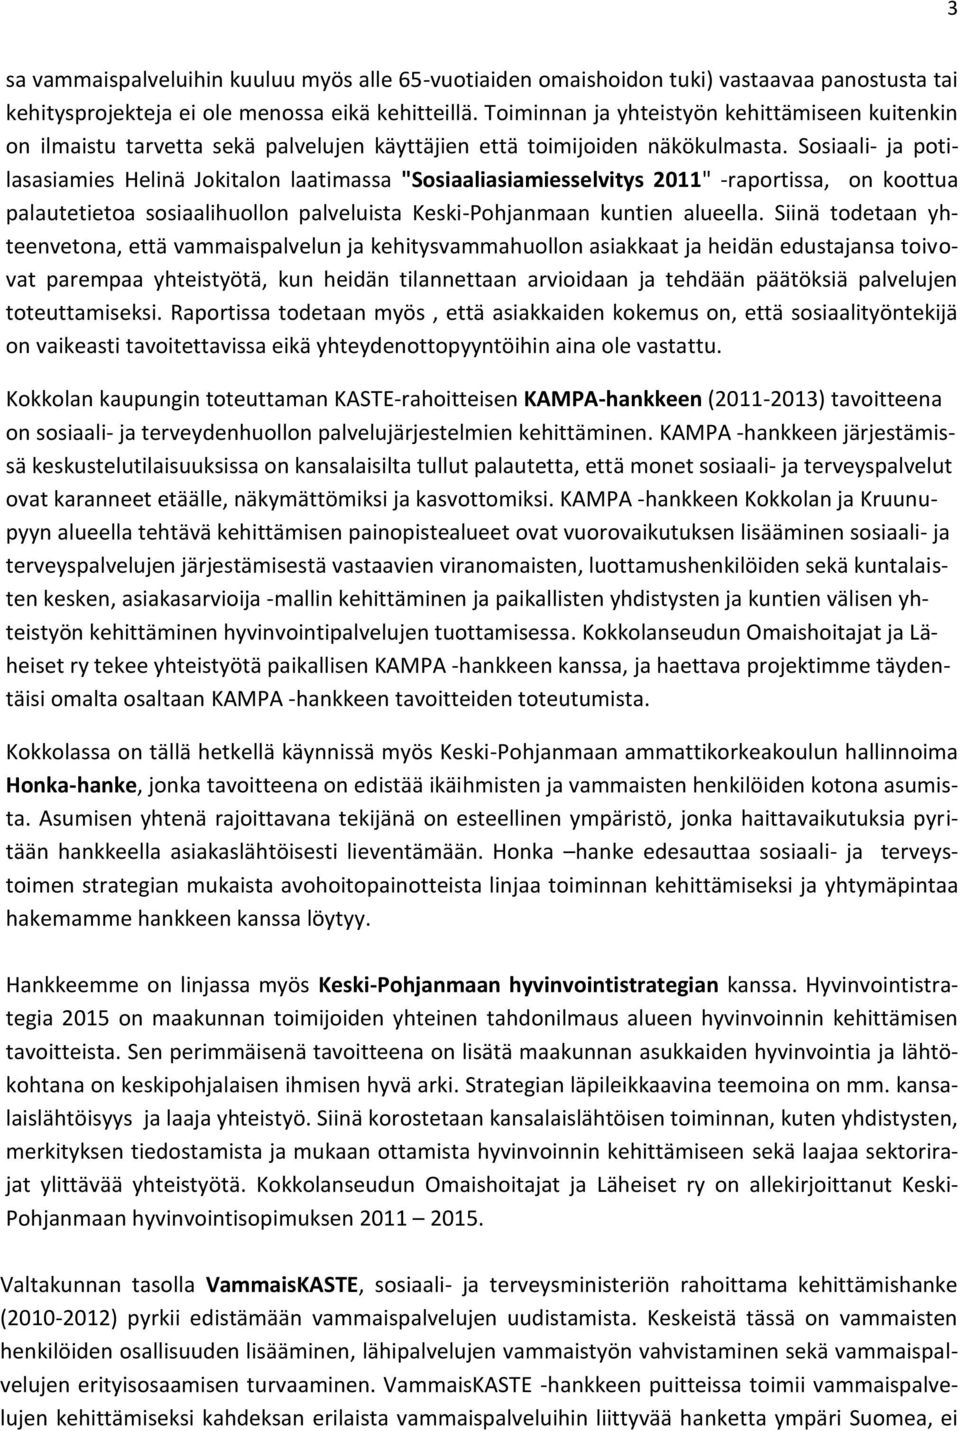 Sosiaali- ja potilasasiamies Helinä Jokitalon laatimassa "Sosiaaliasiamiesselvitys 2011" -raportissa, on koottua palautetietoa sosiaalihuollon palveluista Keski-Pohjanmaan kuntien alueella.